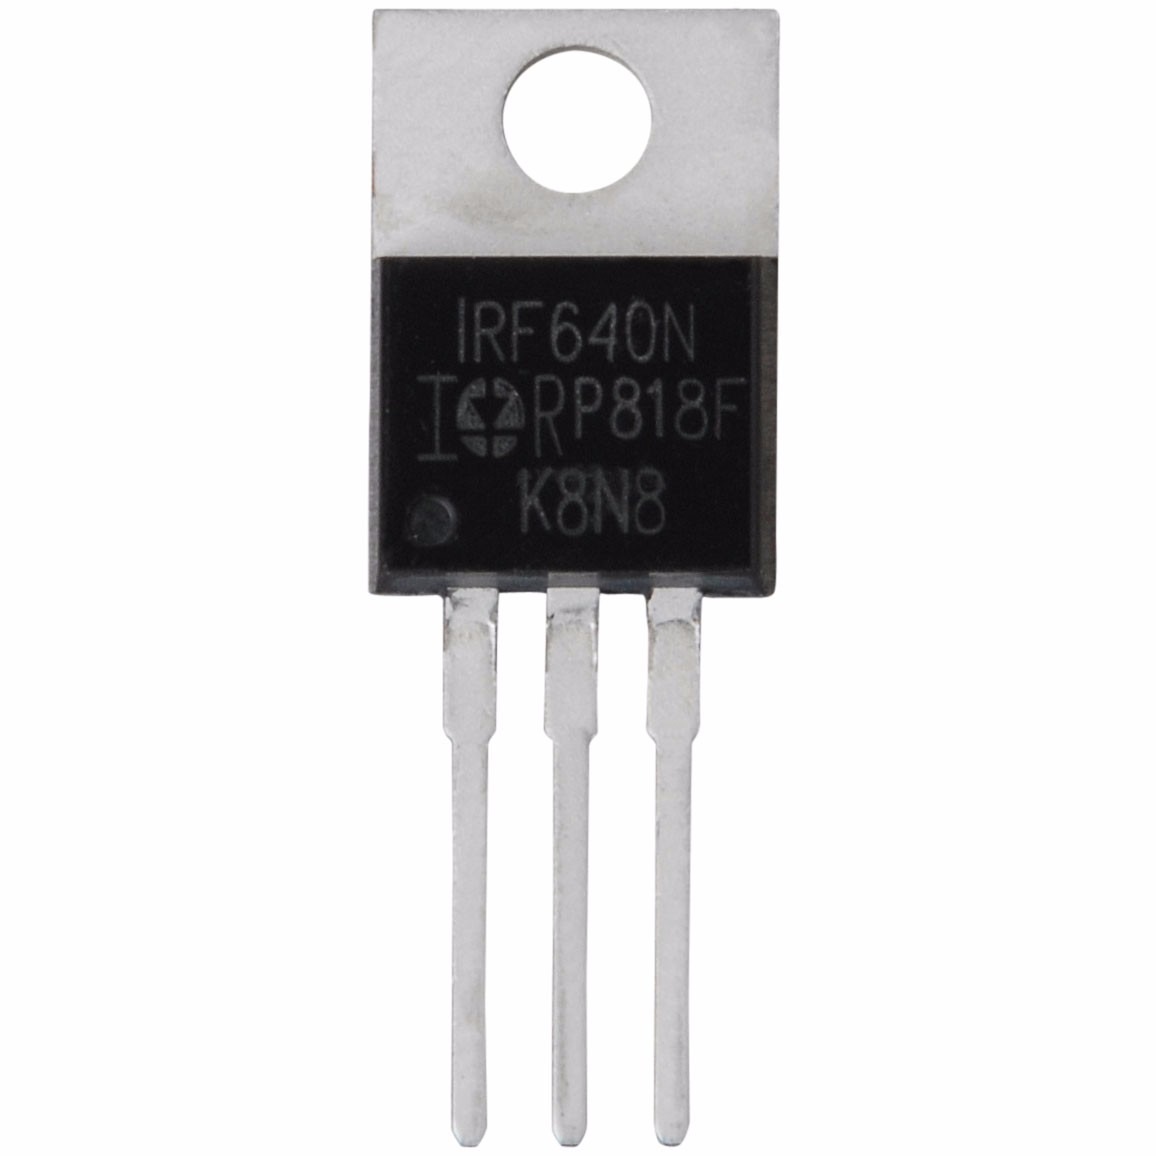 Transistor IRF640N 200v 18a TO-220 original IR